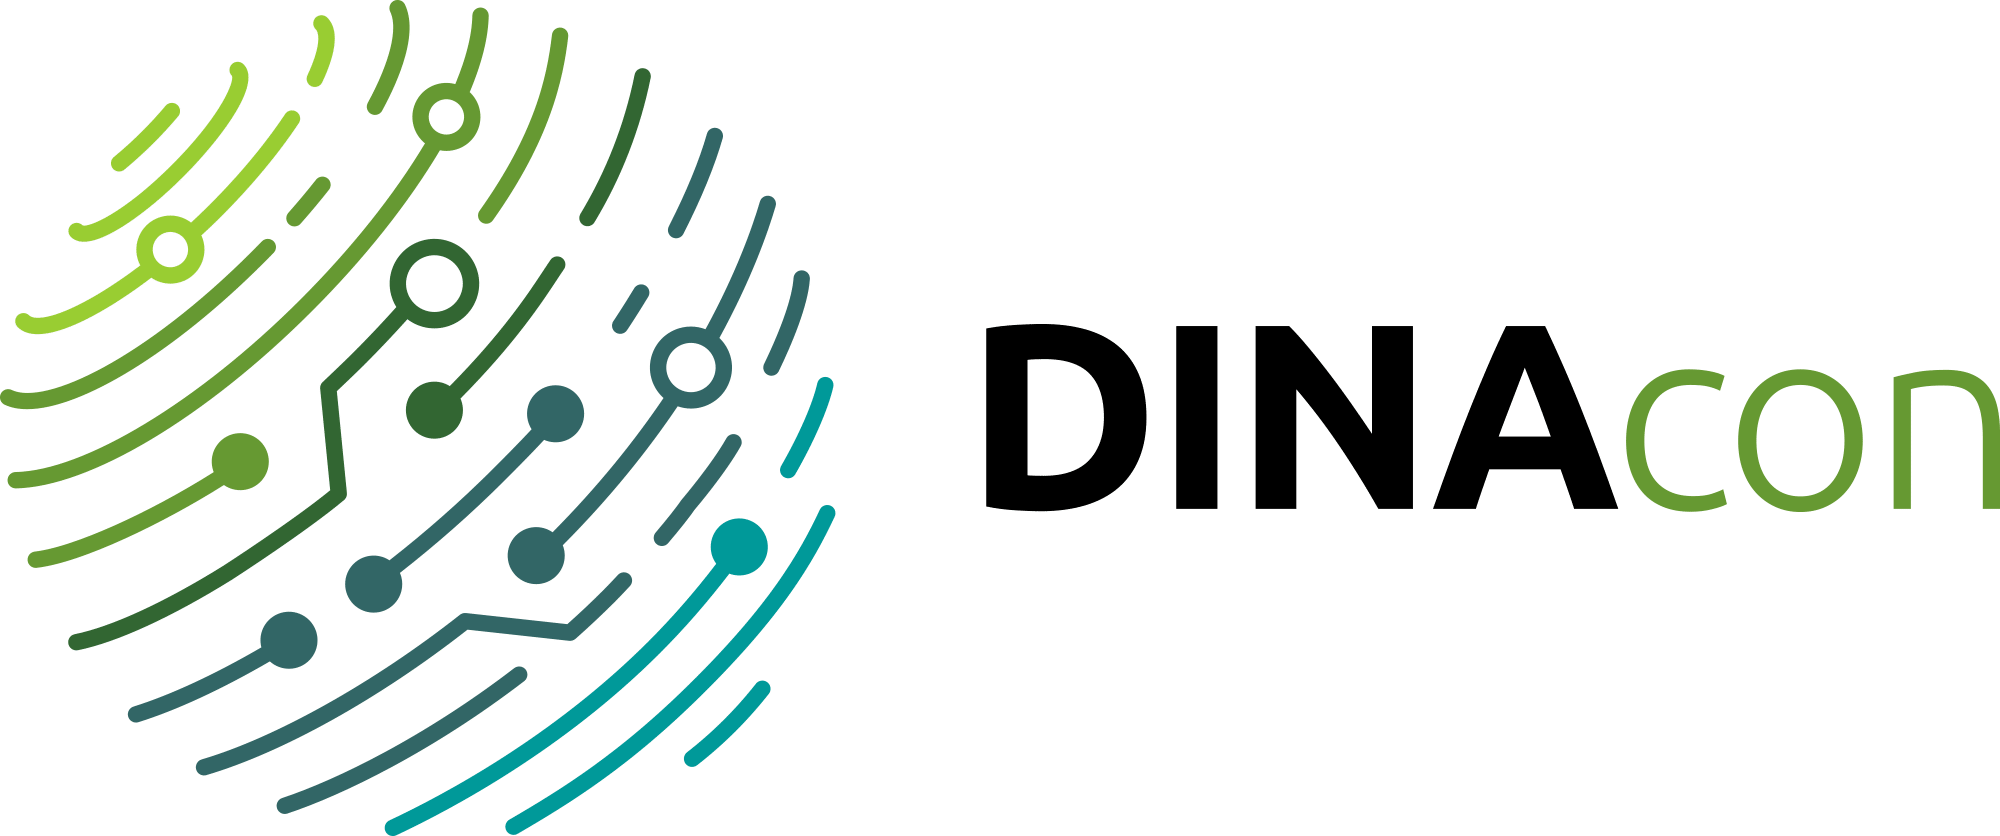 Logo DINAcon